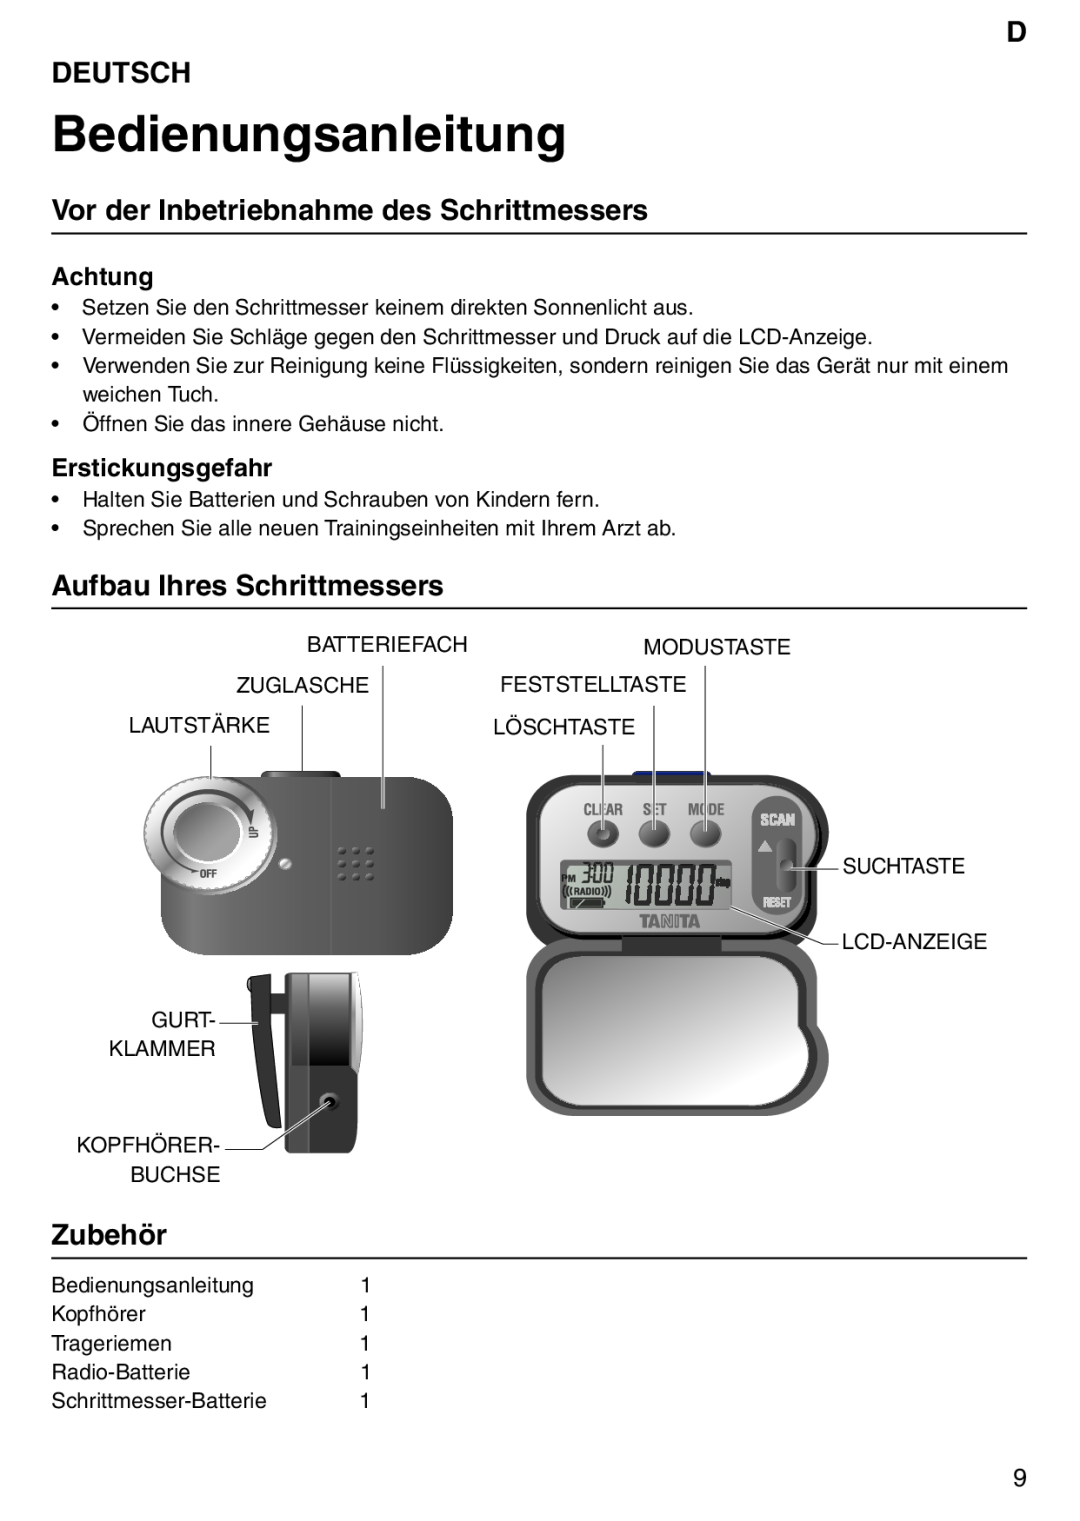 Tanita PD640 Bedienungsanleitung, D Deutsch, Vor der Inbetriebnahme des Schrittmessers, Aufbau Ihres Schrittmessers 